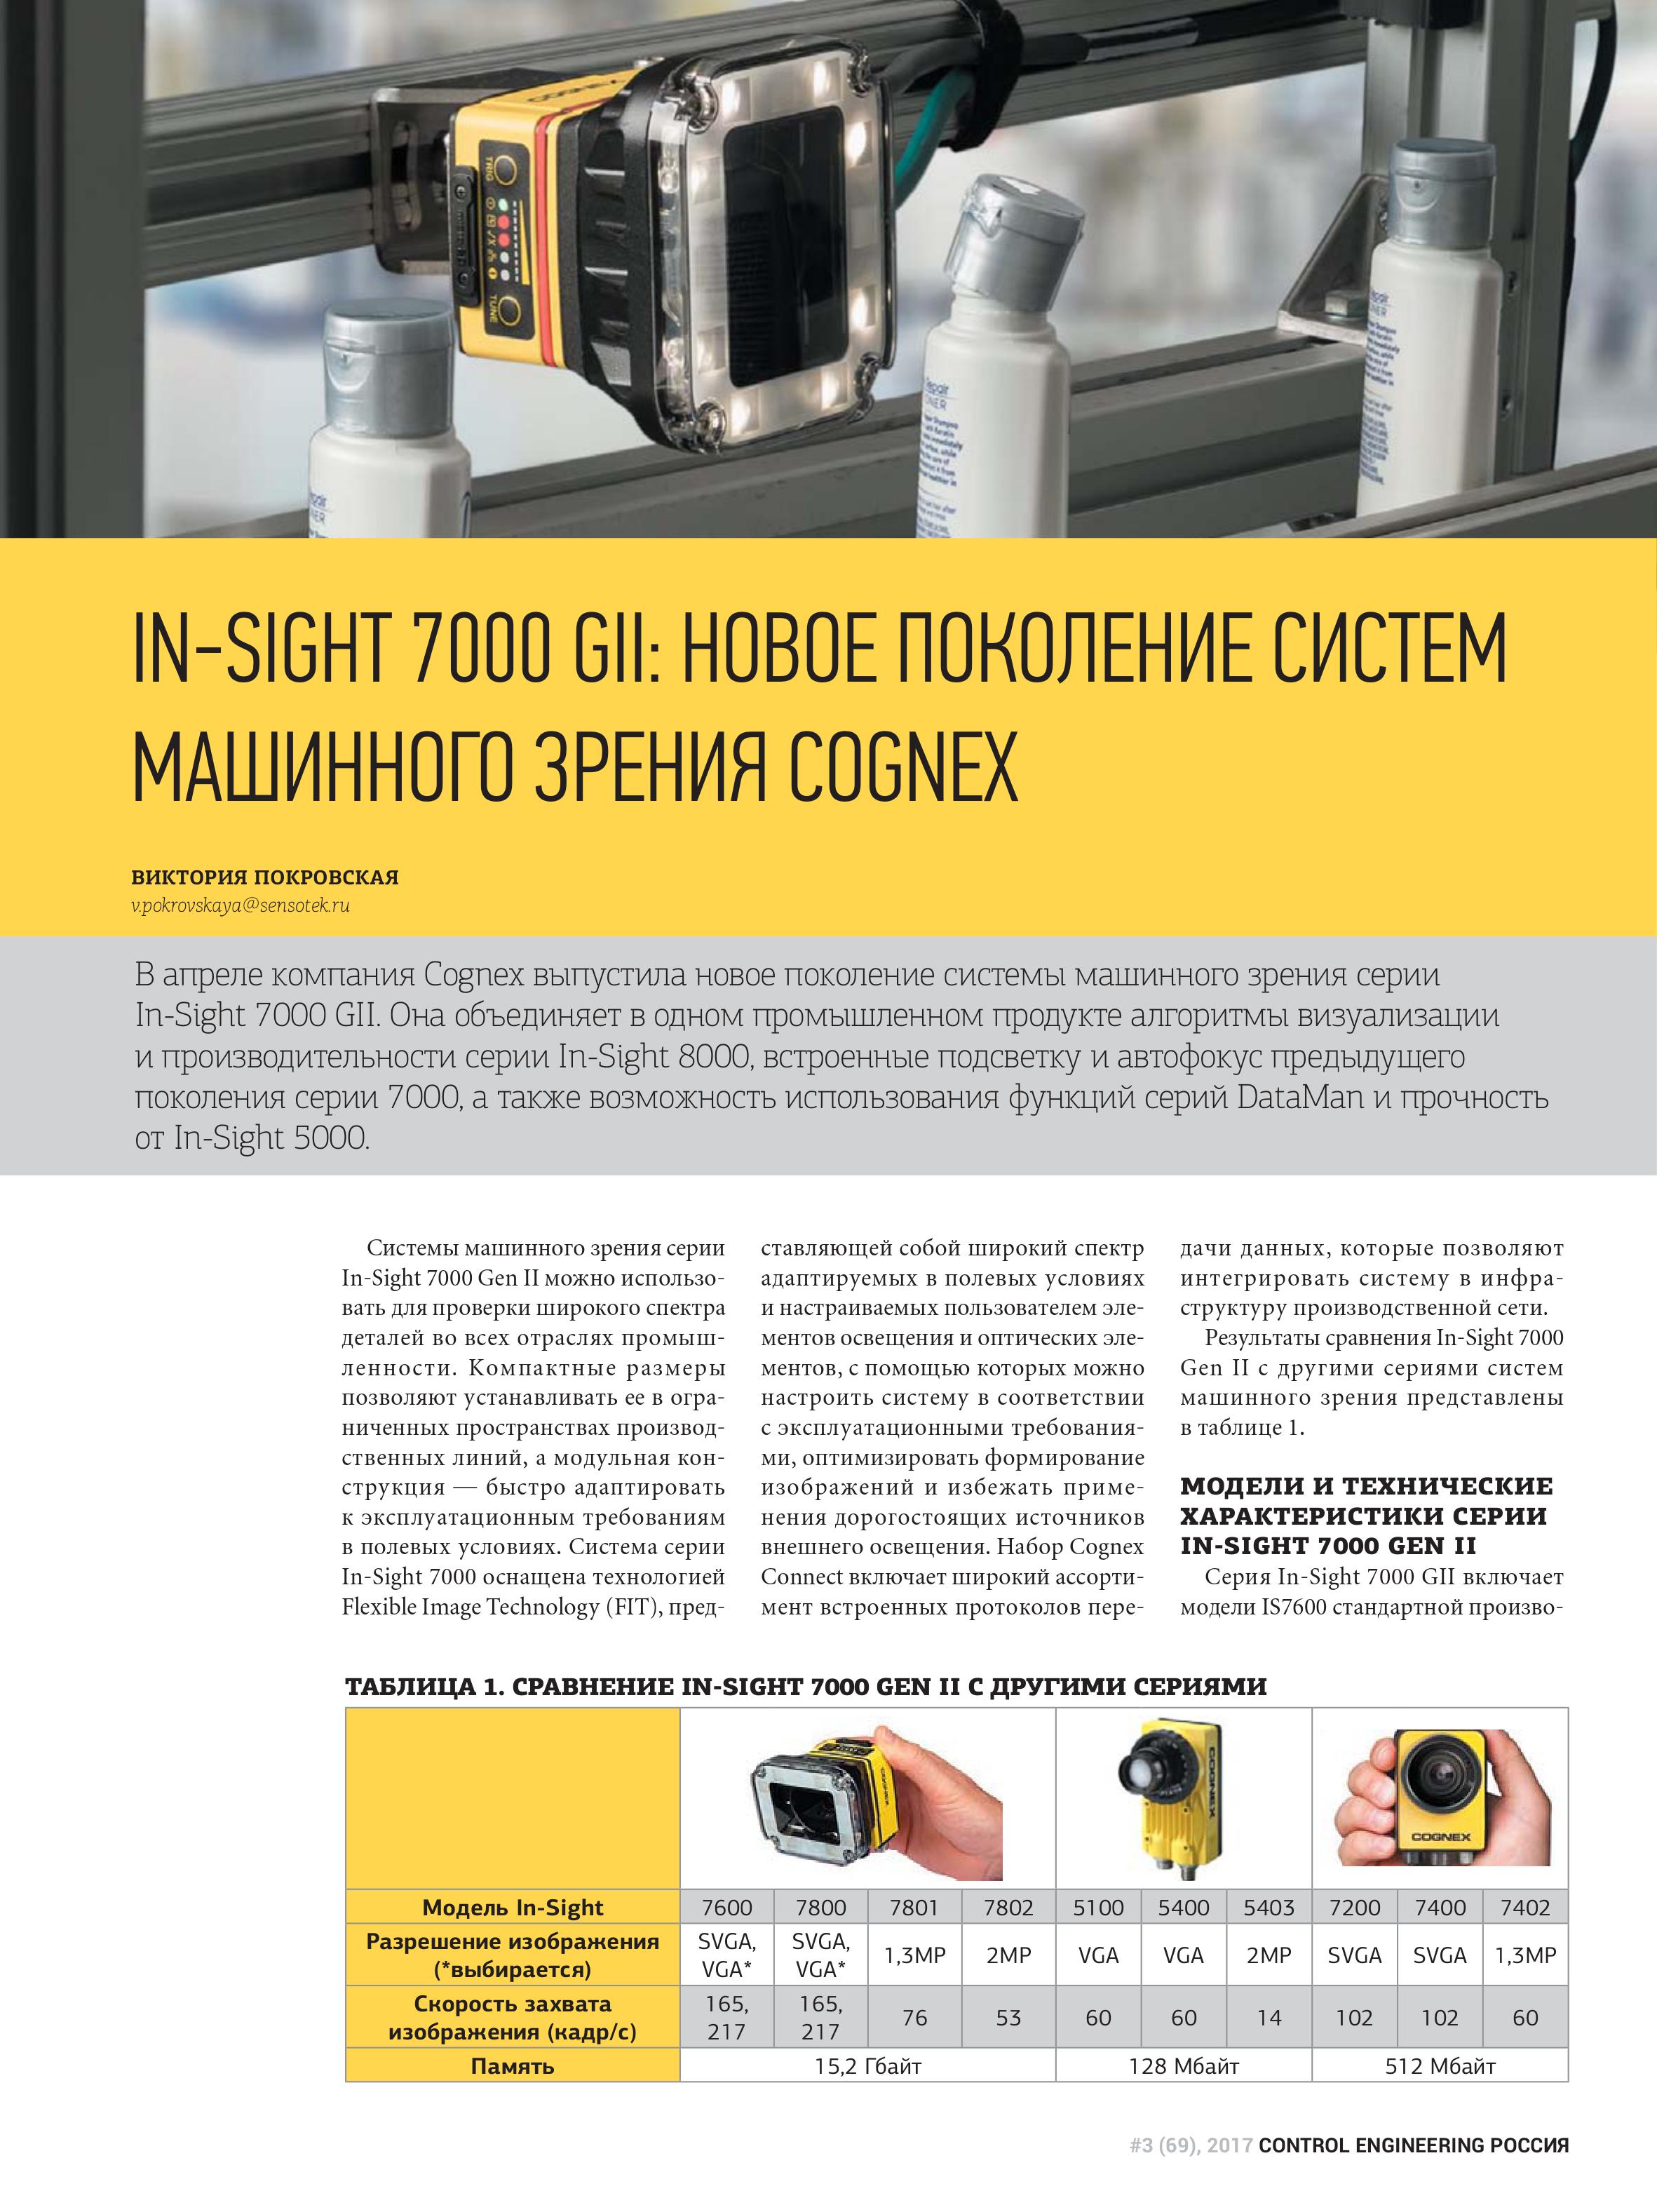 IN-SIGHT 7000 GII: Новое поколение мощных систем машинного зрения COGNEX